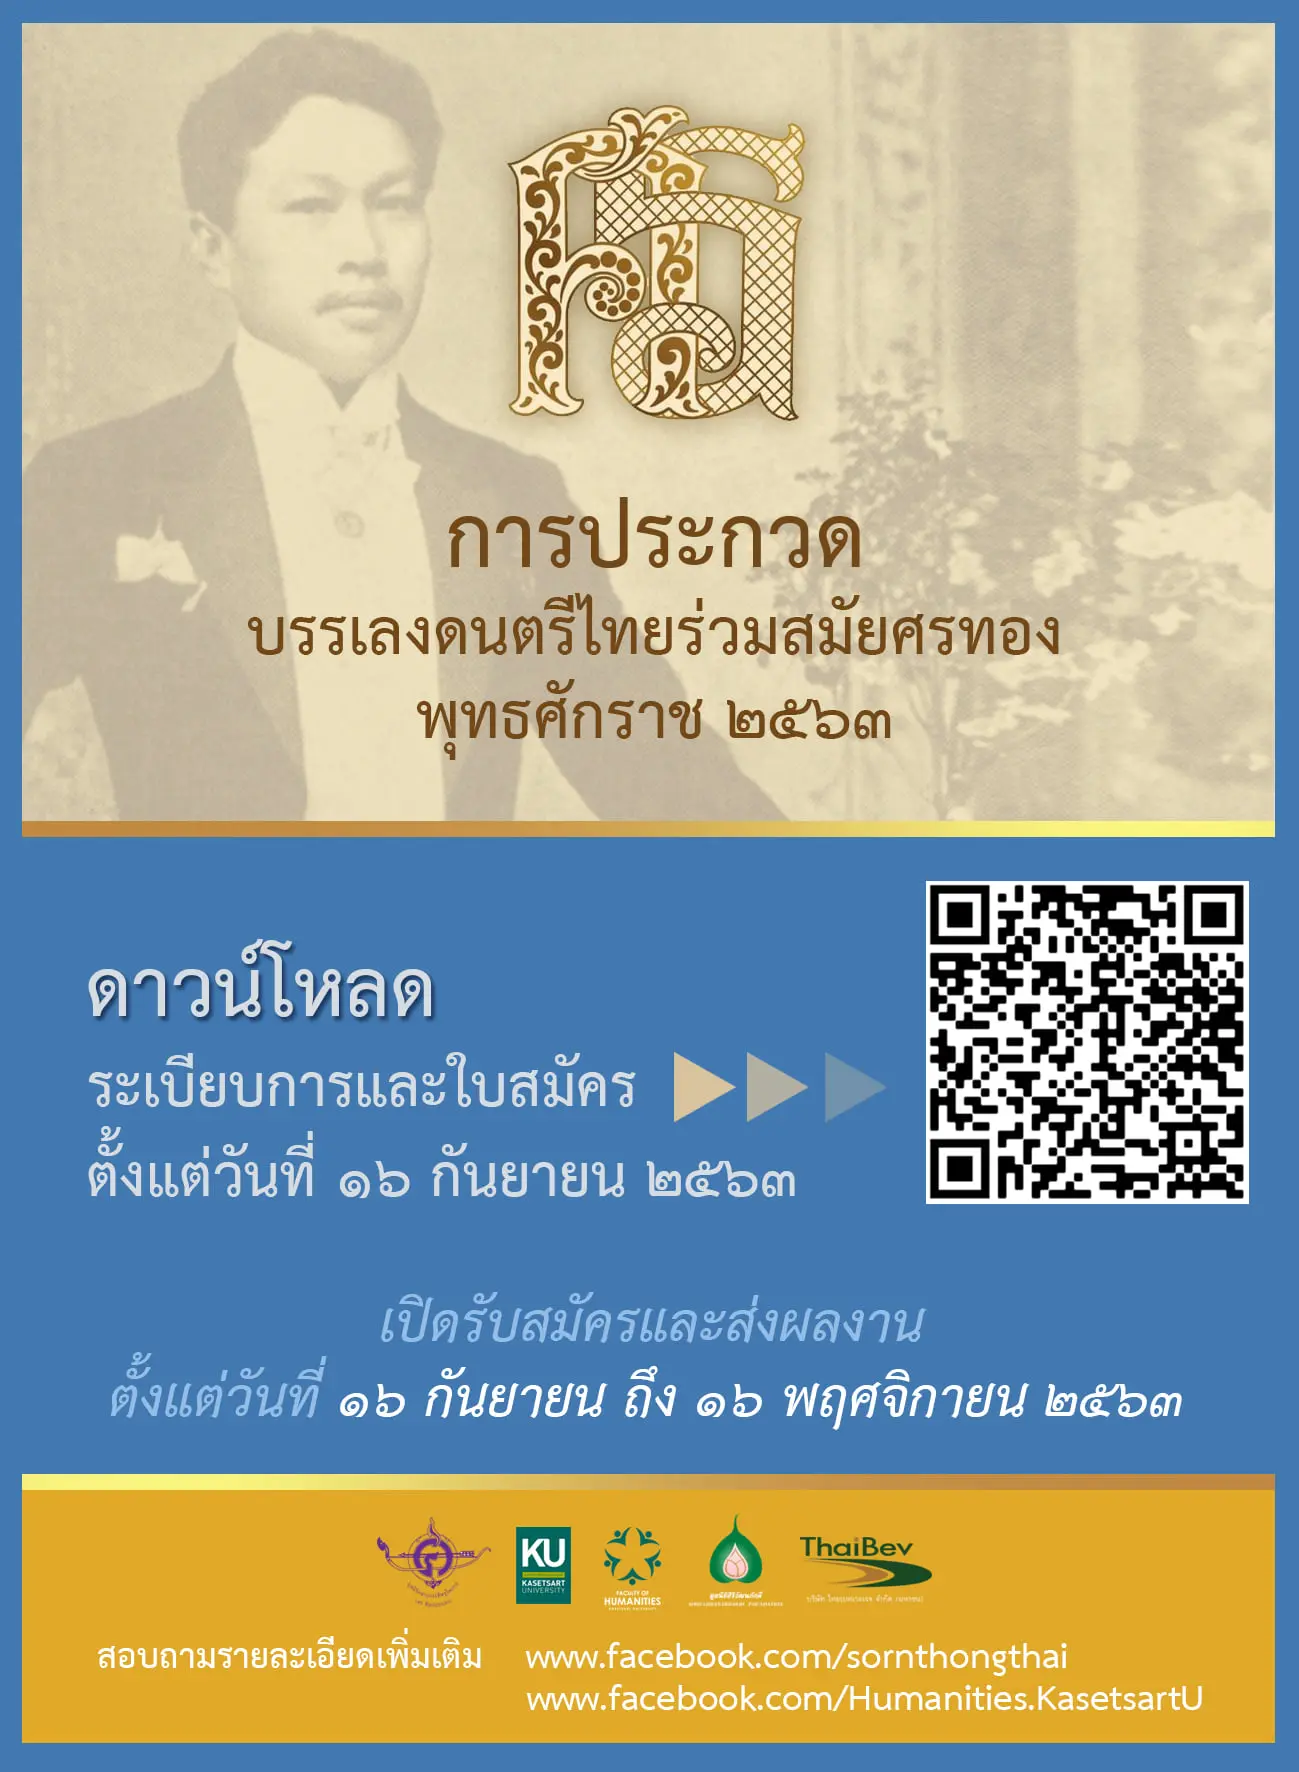 ขอเชิญชวนเข้าร่วมประกวดบรรเลงดนตรีไทยร่วมสมัยศรทอง ประจำปีพุทธศักราช 2563 ส่งผลงานได้ถึงวันที่ 16 พฤศจิกายน 2563  